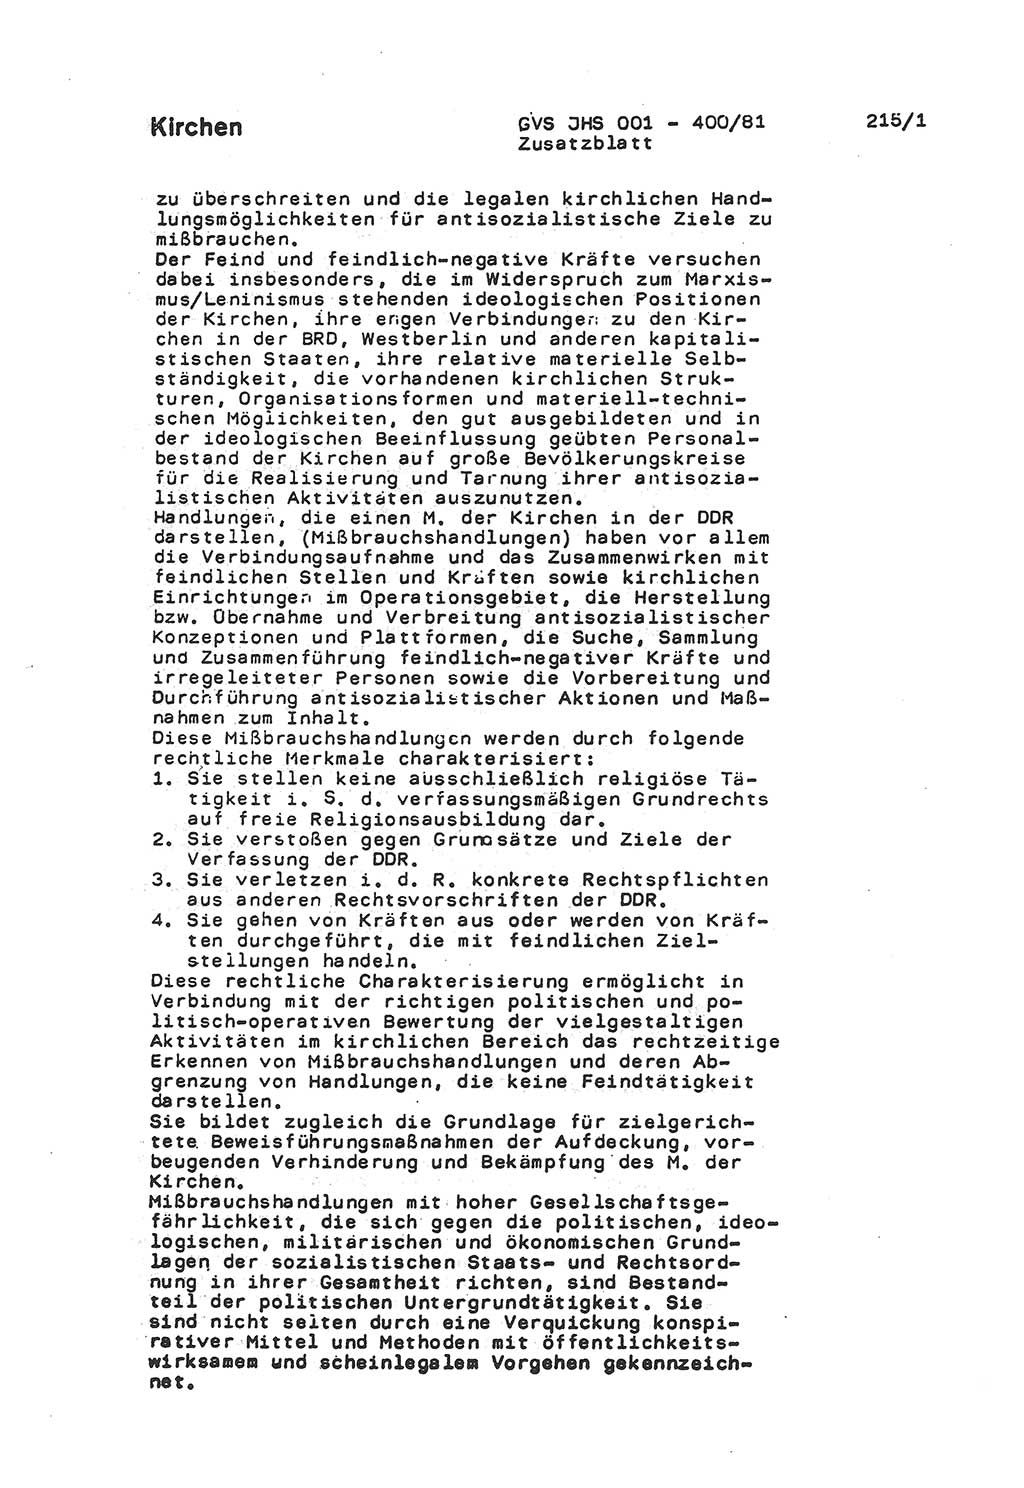 Wörterbuch der politisch-operativen Arbeit, Ministerium für Staatssicherheit (MfS) [Deutsche Demokratische Republik (DDR)], Juristische Hochschule (JHS), Geheime Verschlußsache (GVS) o001-400/81, Potsdam 1985, Blatt 215/1 (Wb. pol.-op. Arb. MfS DDR JHS GVS o001-400/81 1985, Bl. 215/1)